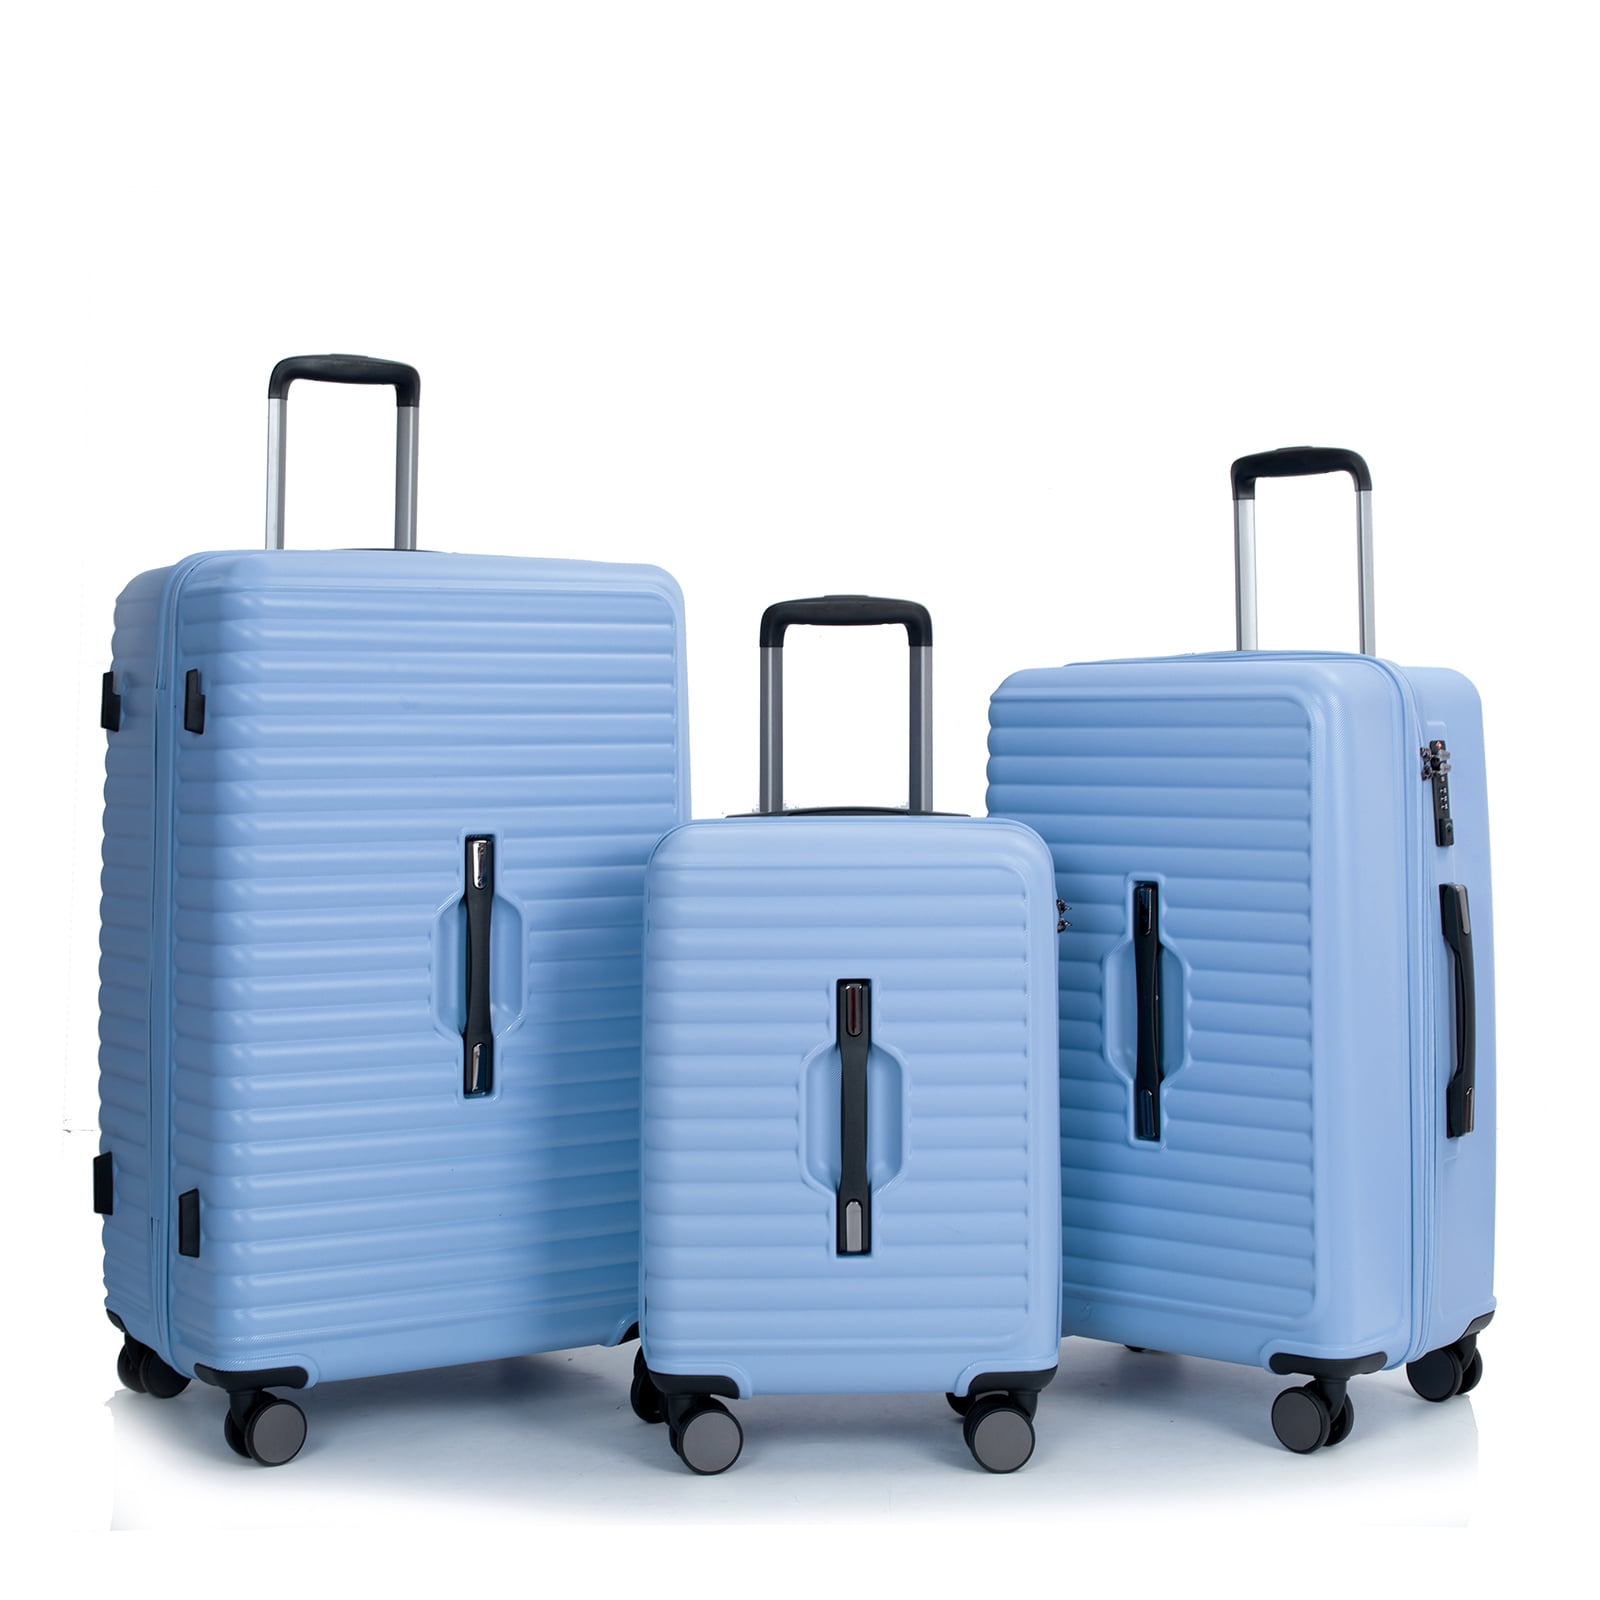 Travelhouse 3 Piece Hardside Luggage Set Hardshell Lightweight Suitcase ...